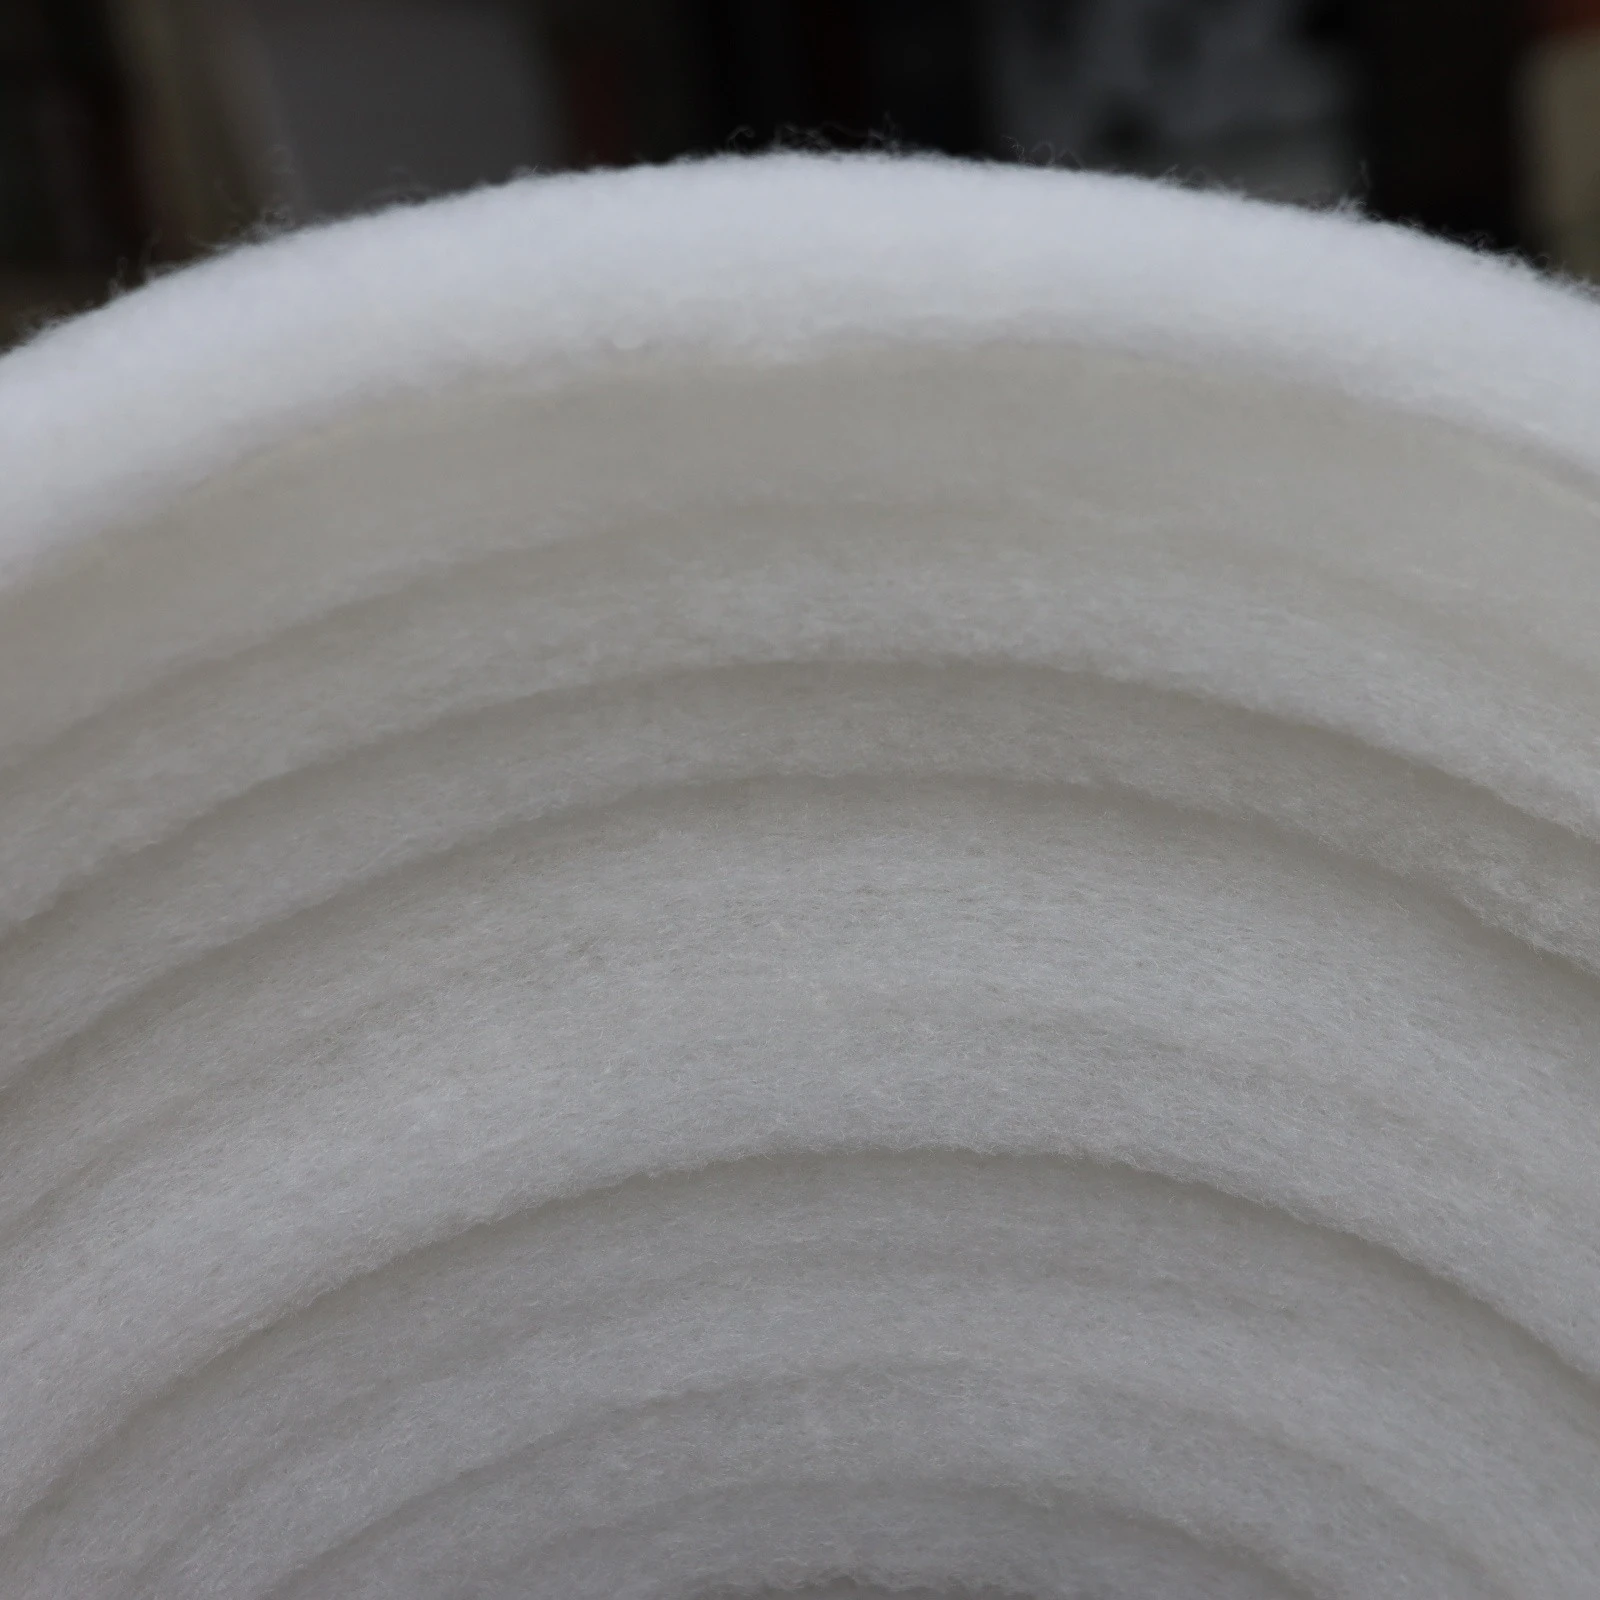 sound insulation cotton sound-absorbing sponge High density